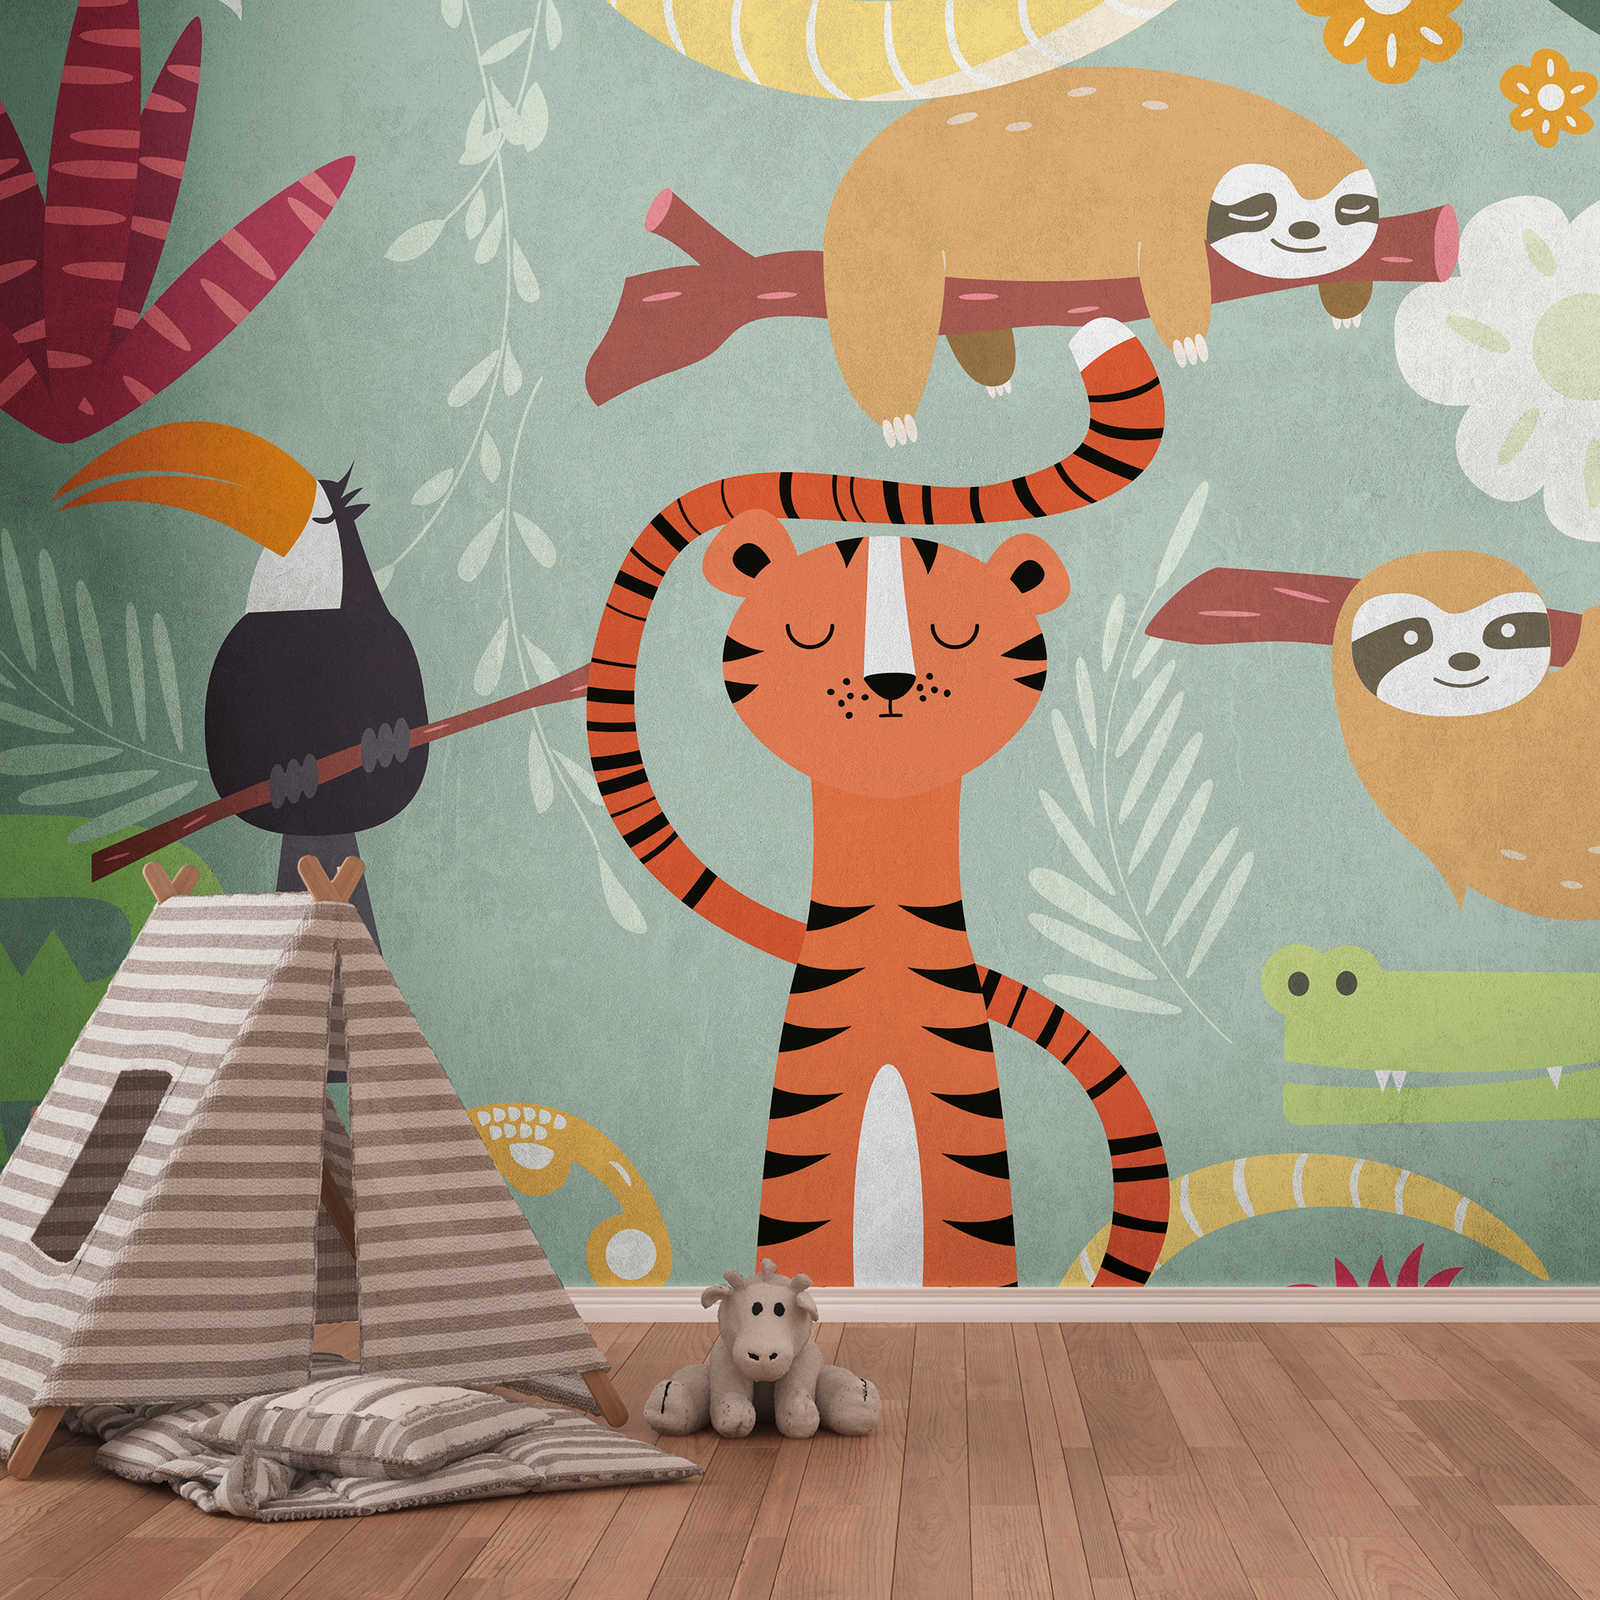         Wallpaper novelty - children motif wallpaper jungle animals comic style
    